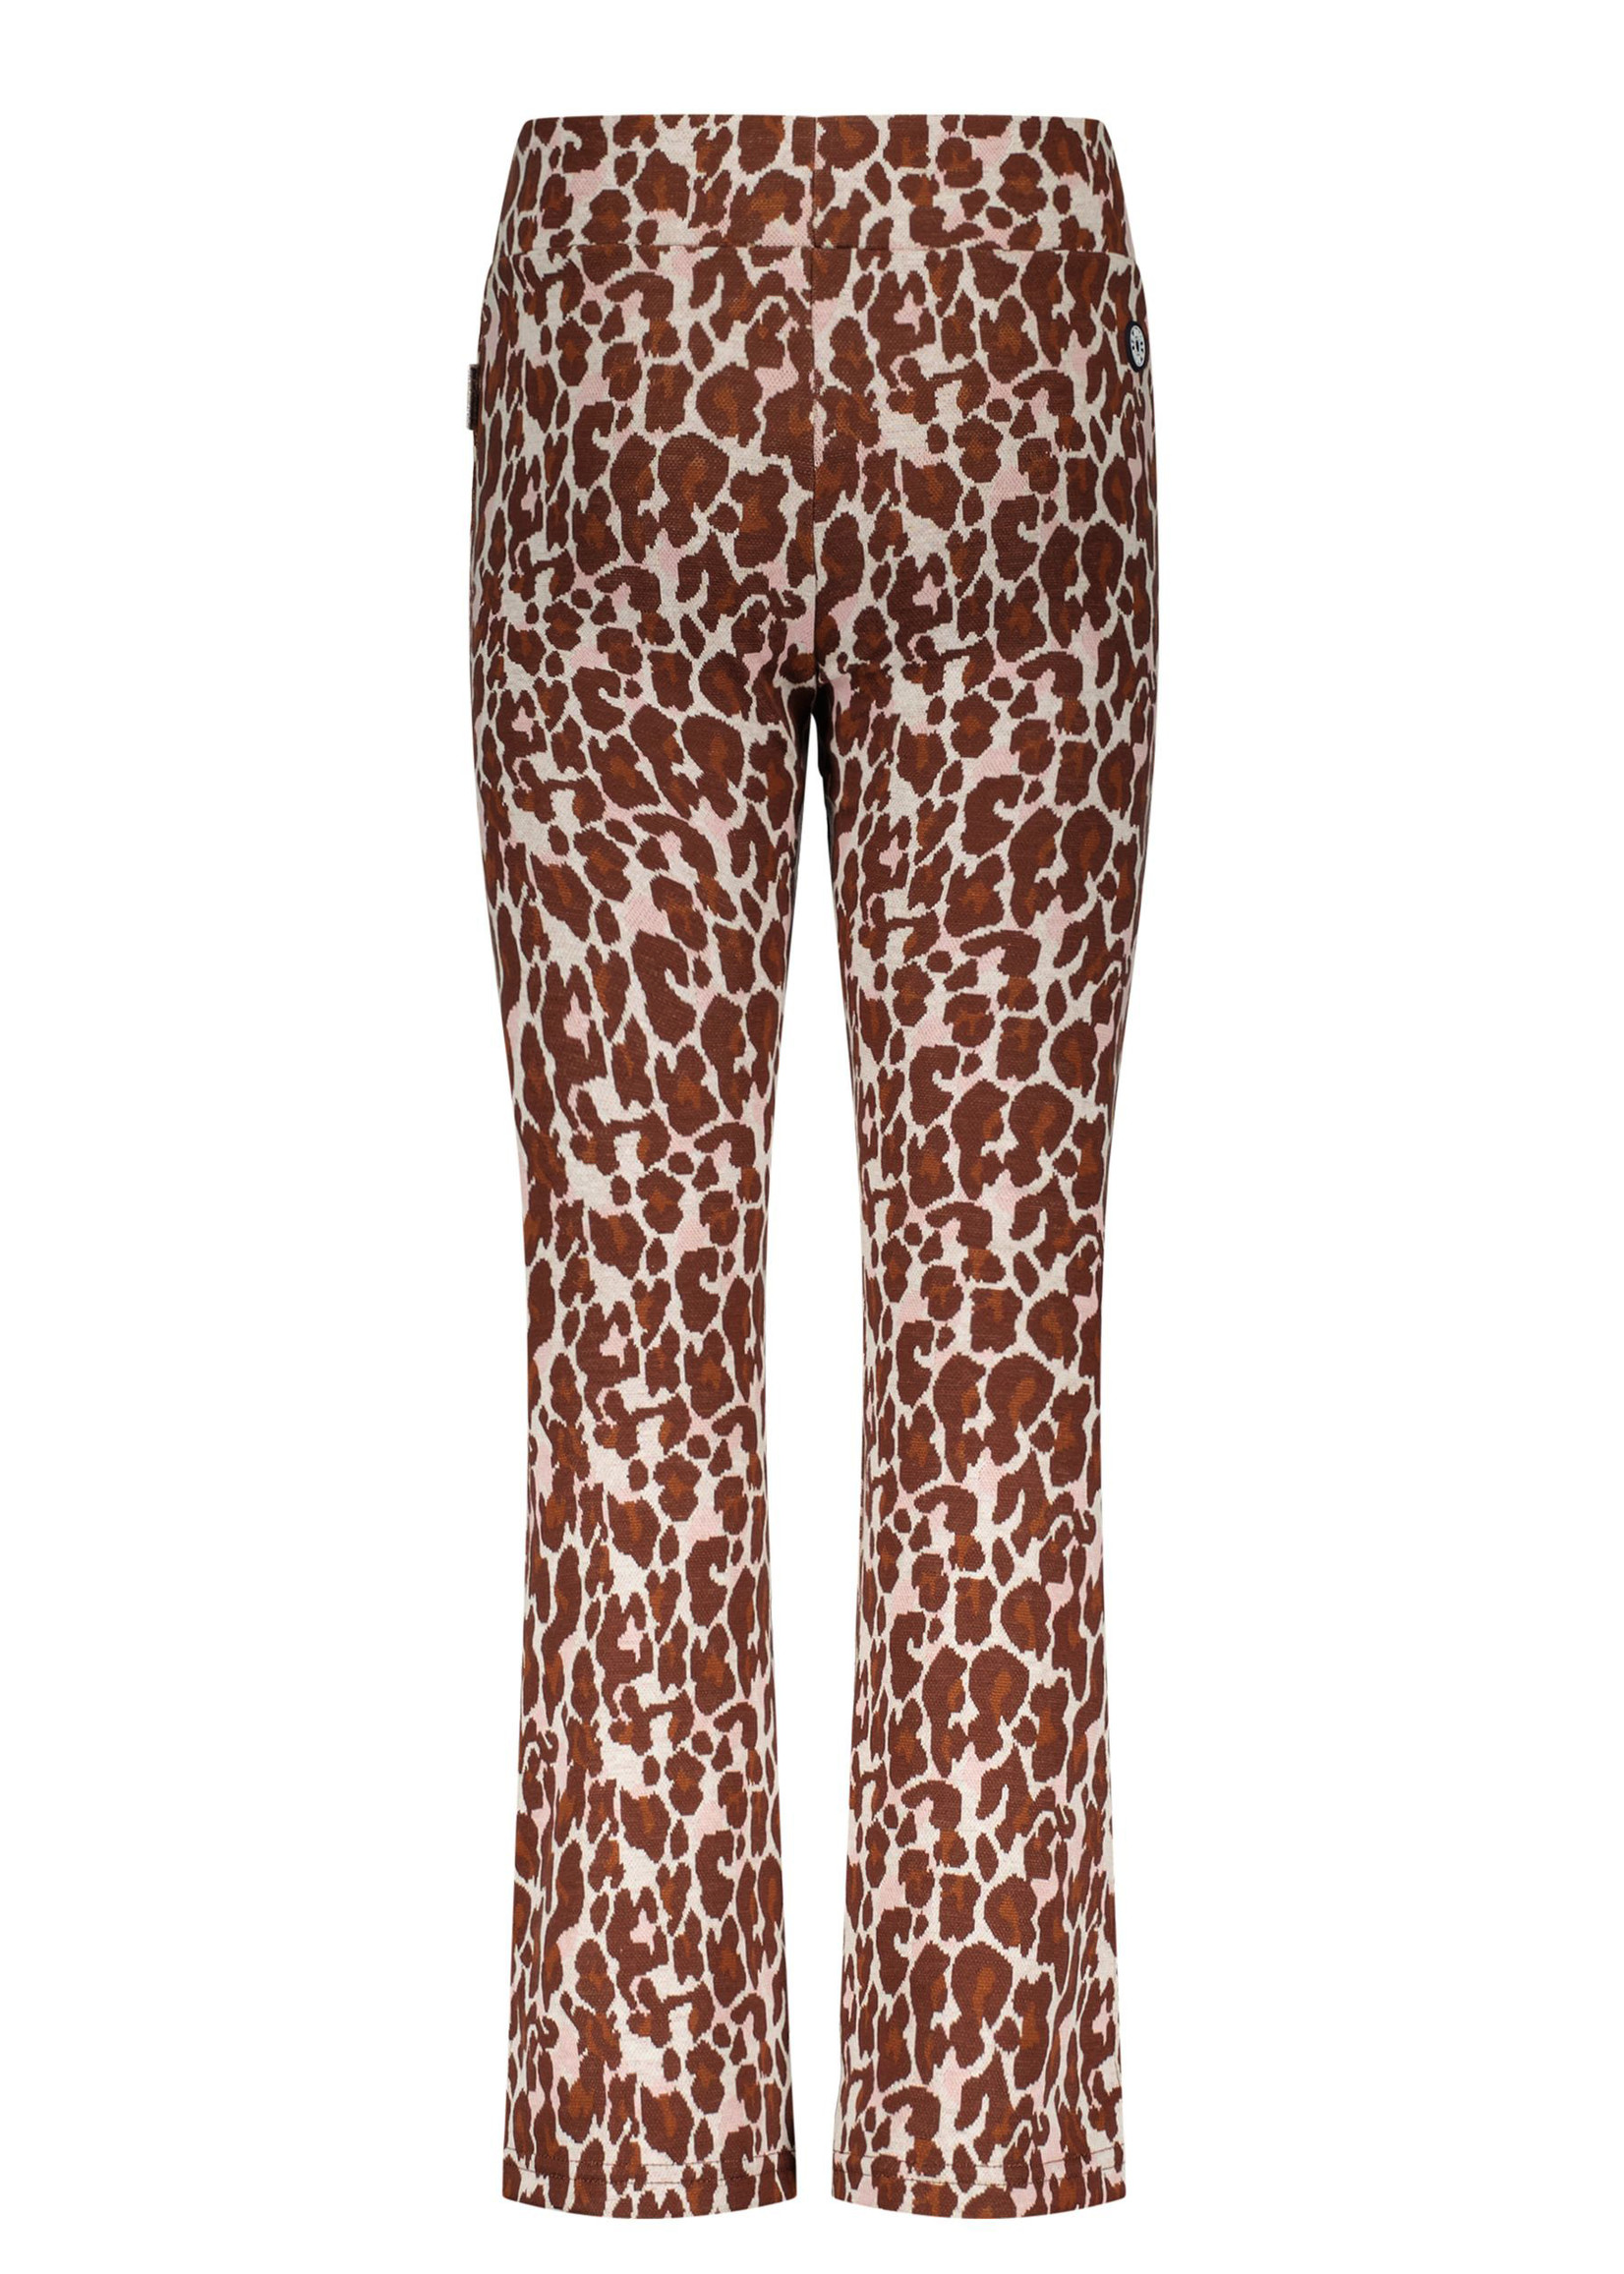 B-Nosy Girls jacquard leopard flair pants, Lucky leopard